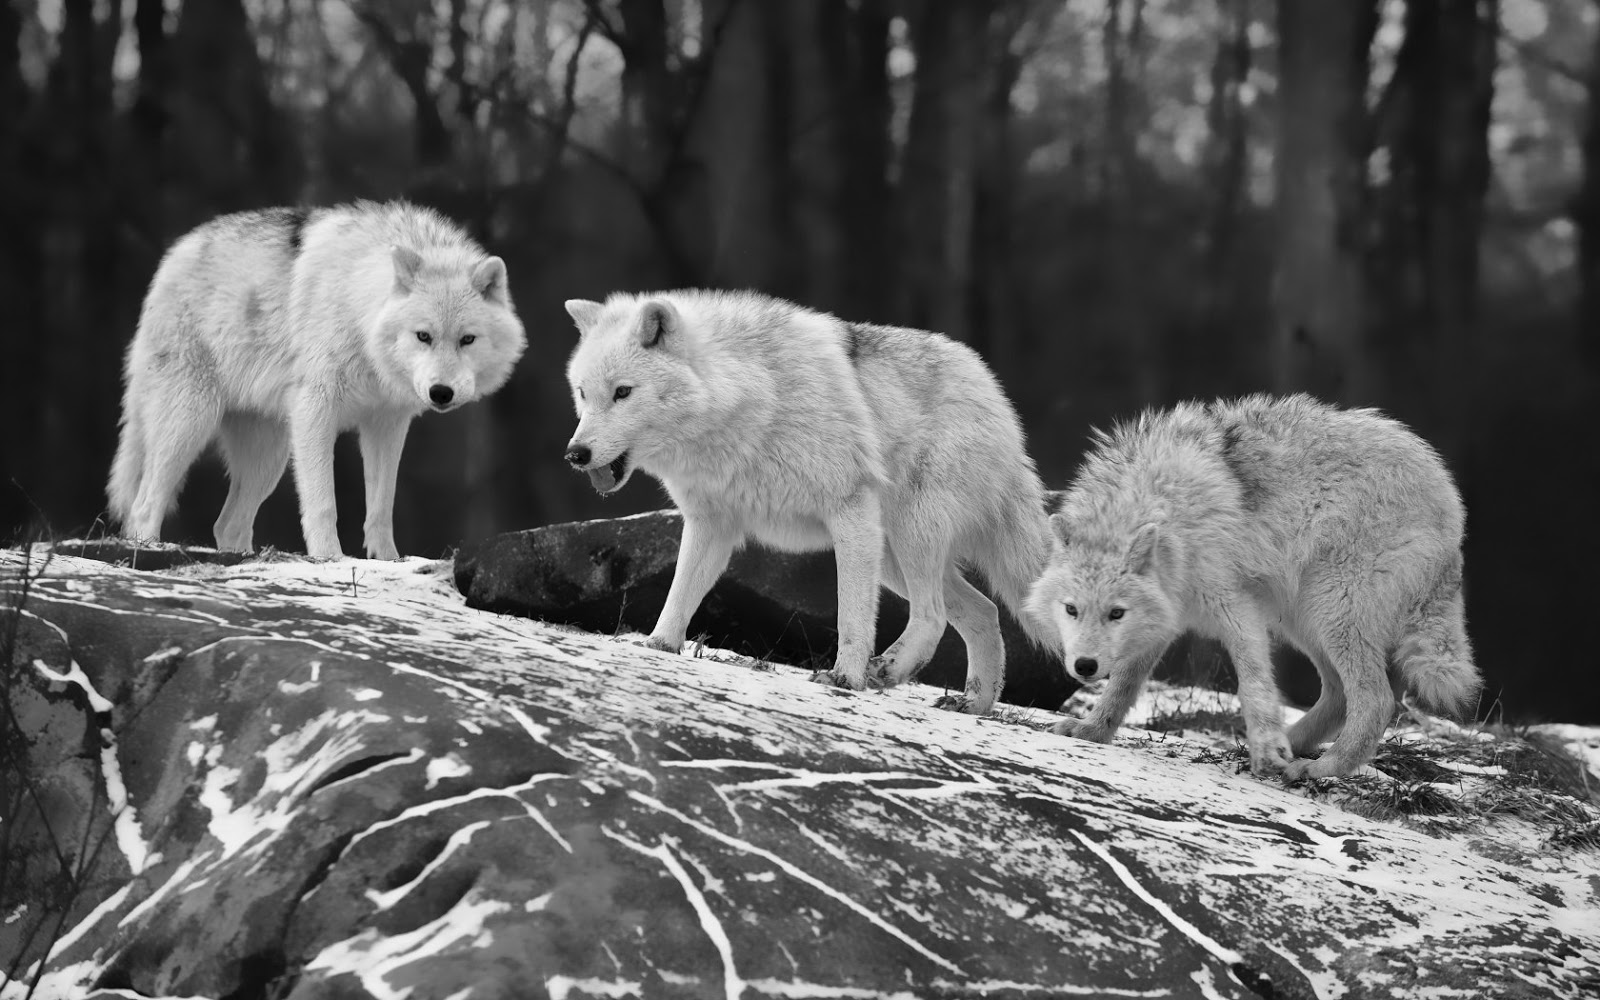 Wolves Wallpaper